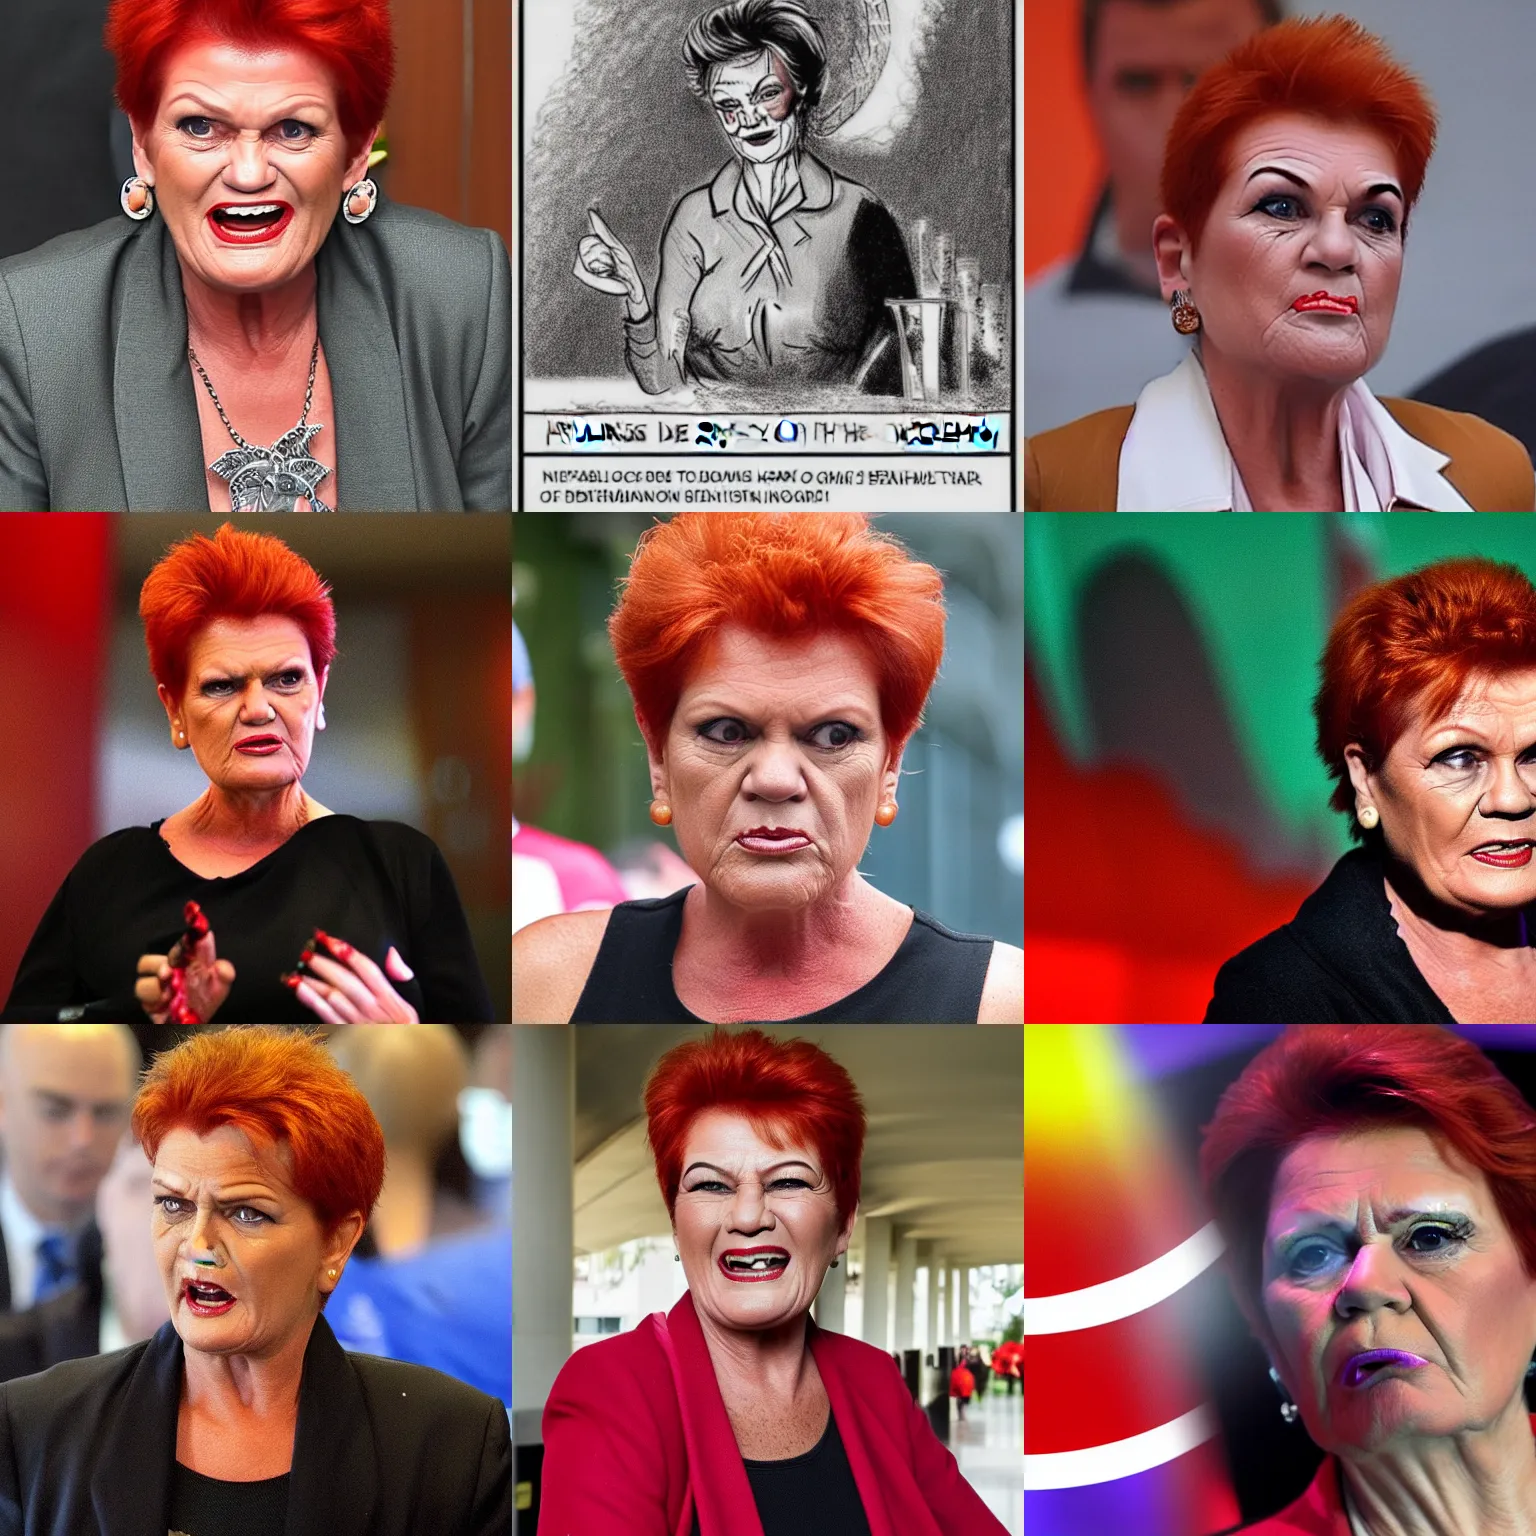 Prompt: Pauline Hanson as the devil